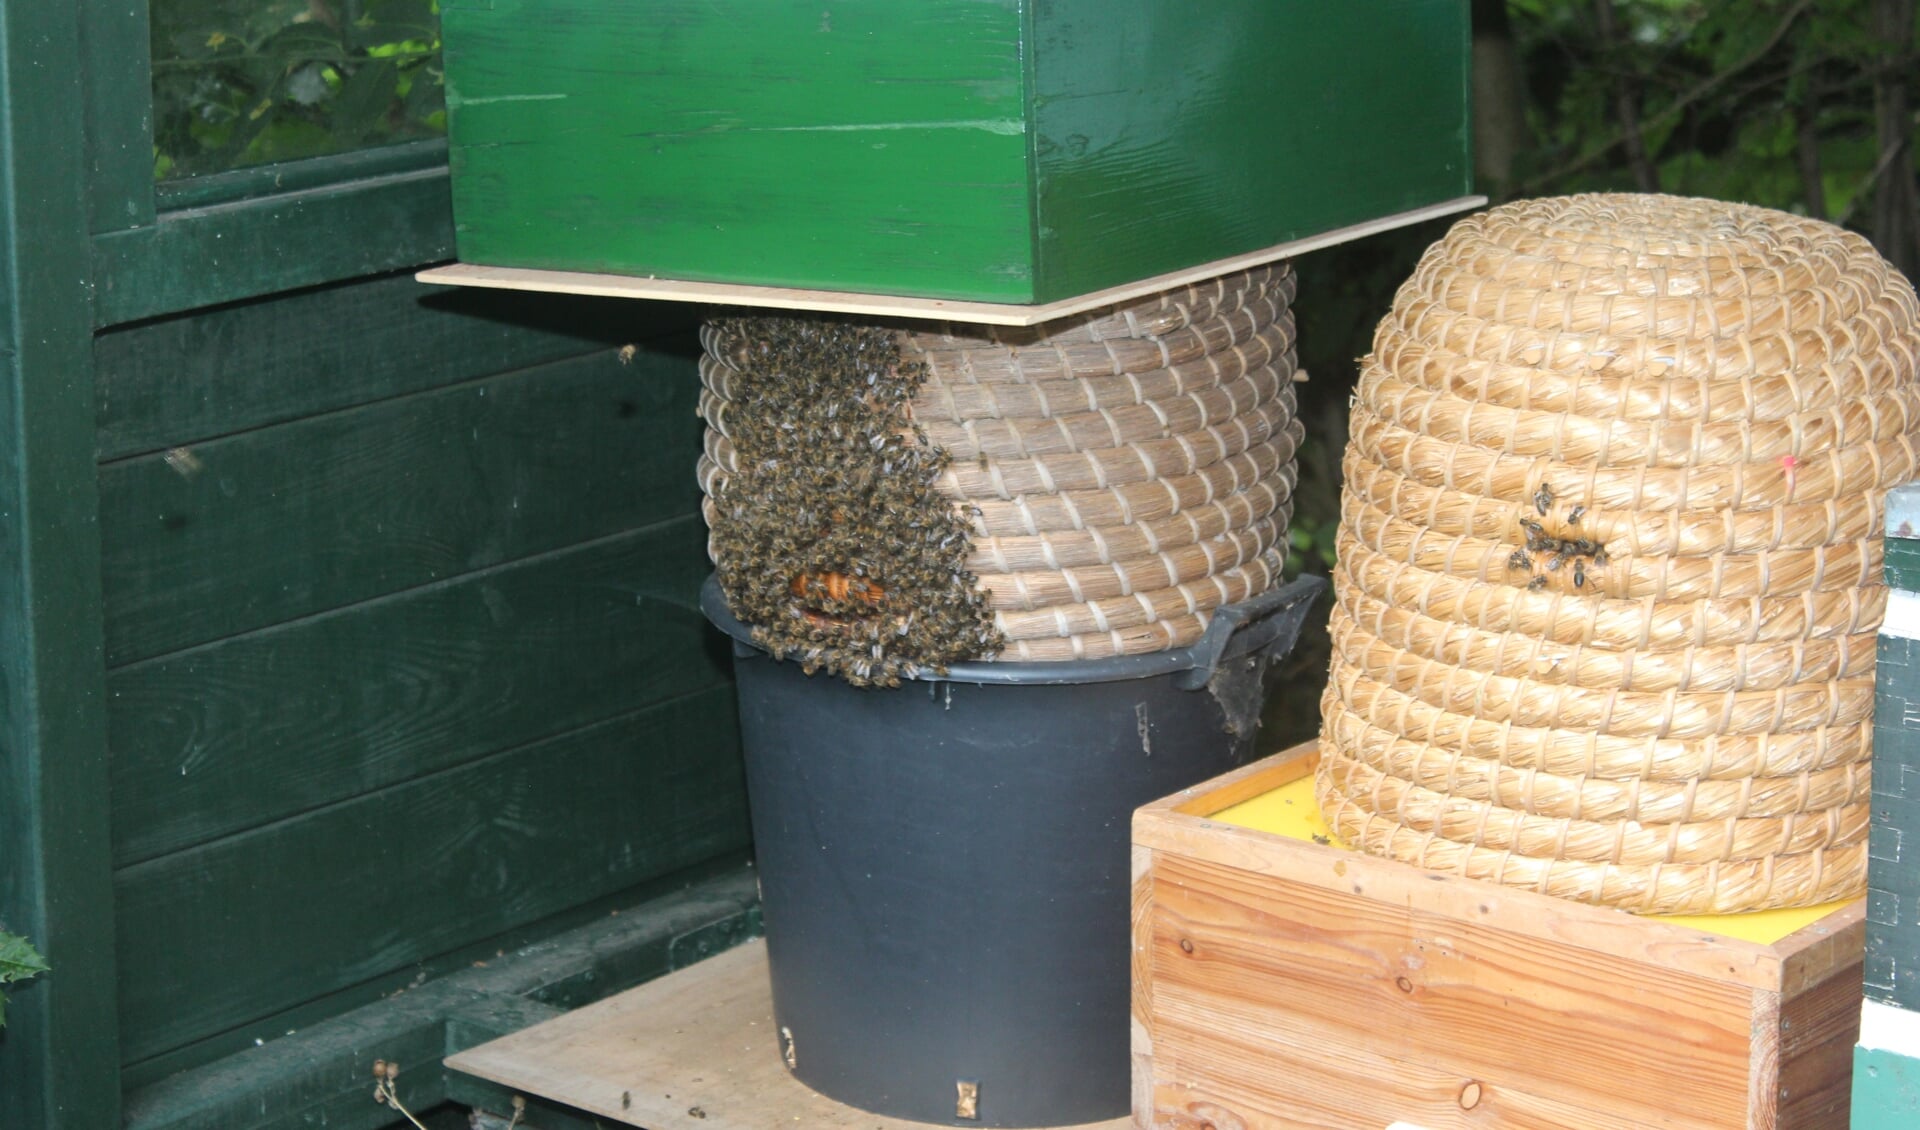  De bijen weten Kastanjelaan 1 in Groenekan goed te vinden.